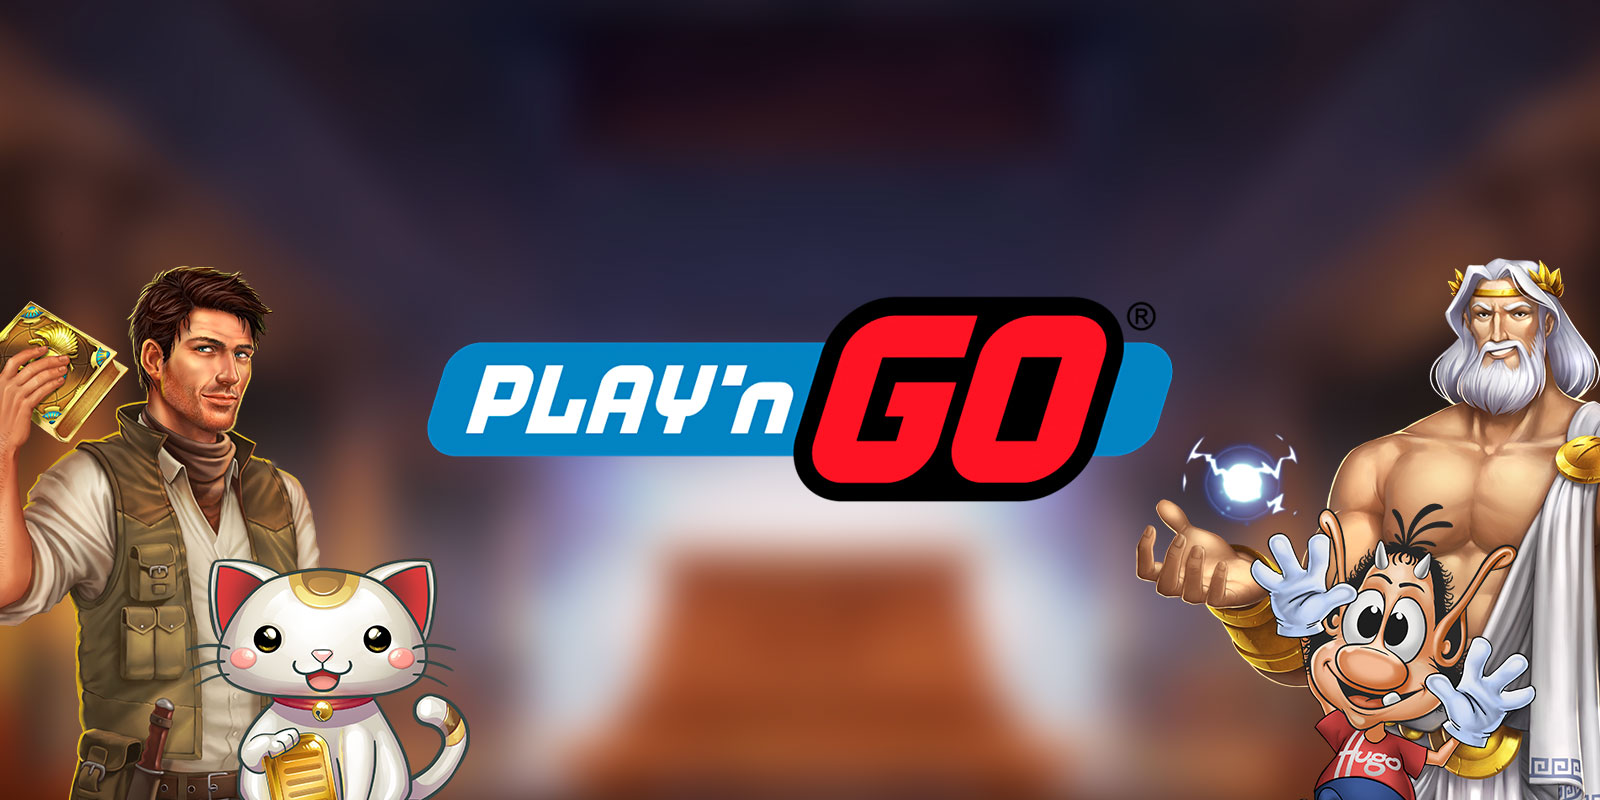 Το Live casino του betshop.gr πιο «δυνατό» με την Play’n Go!